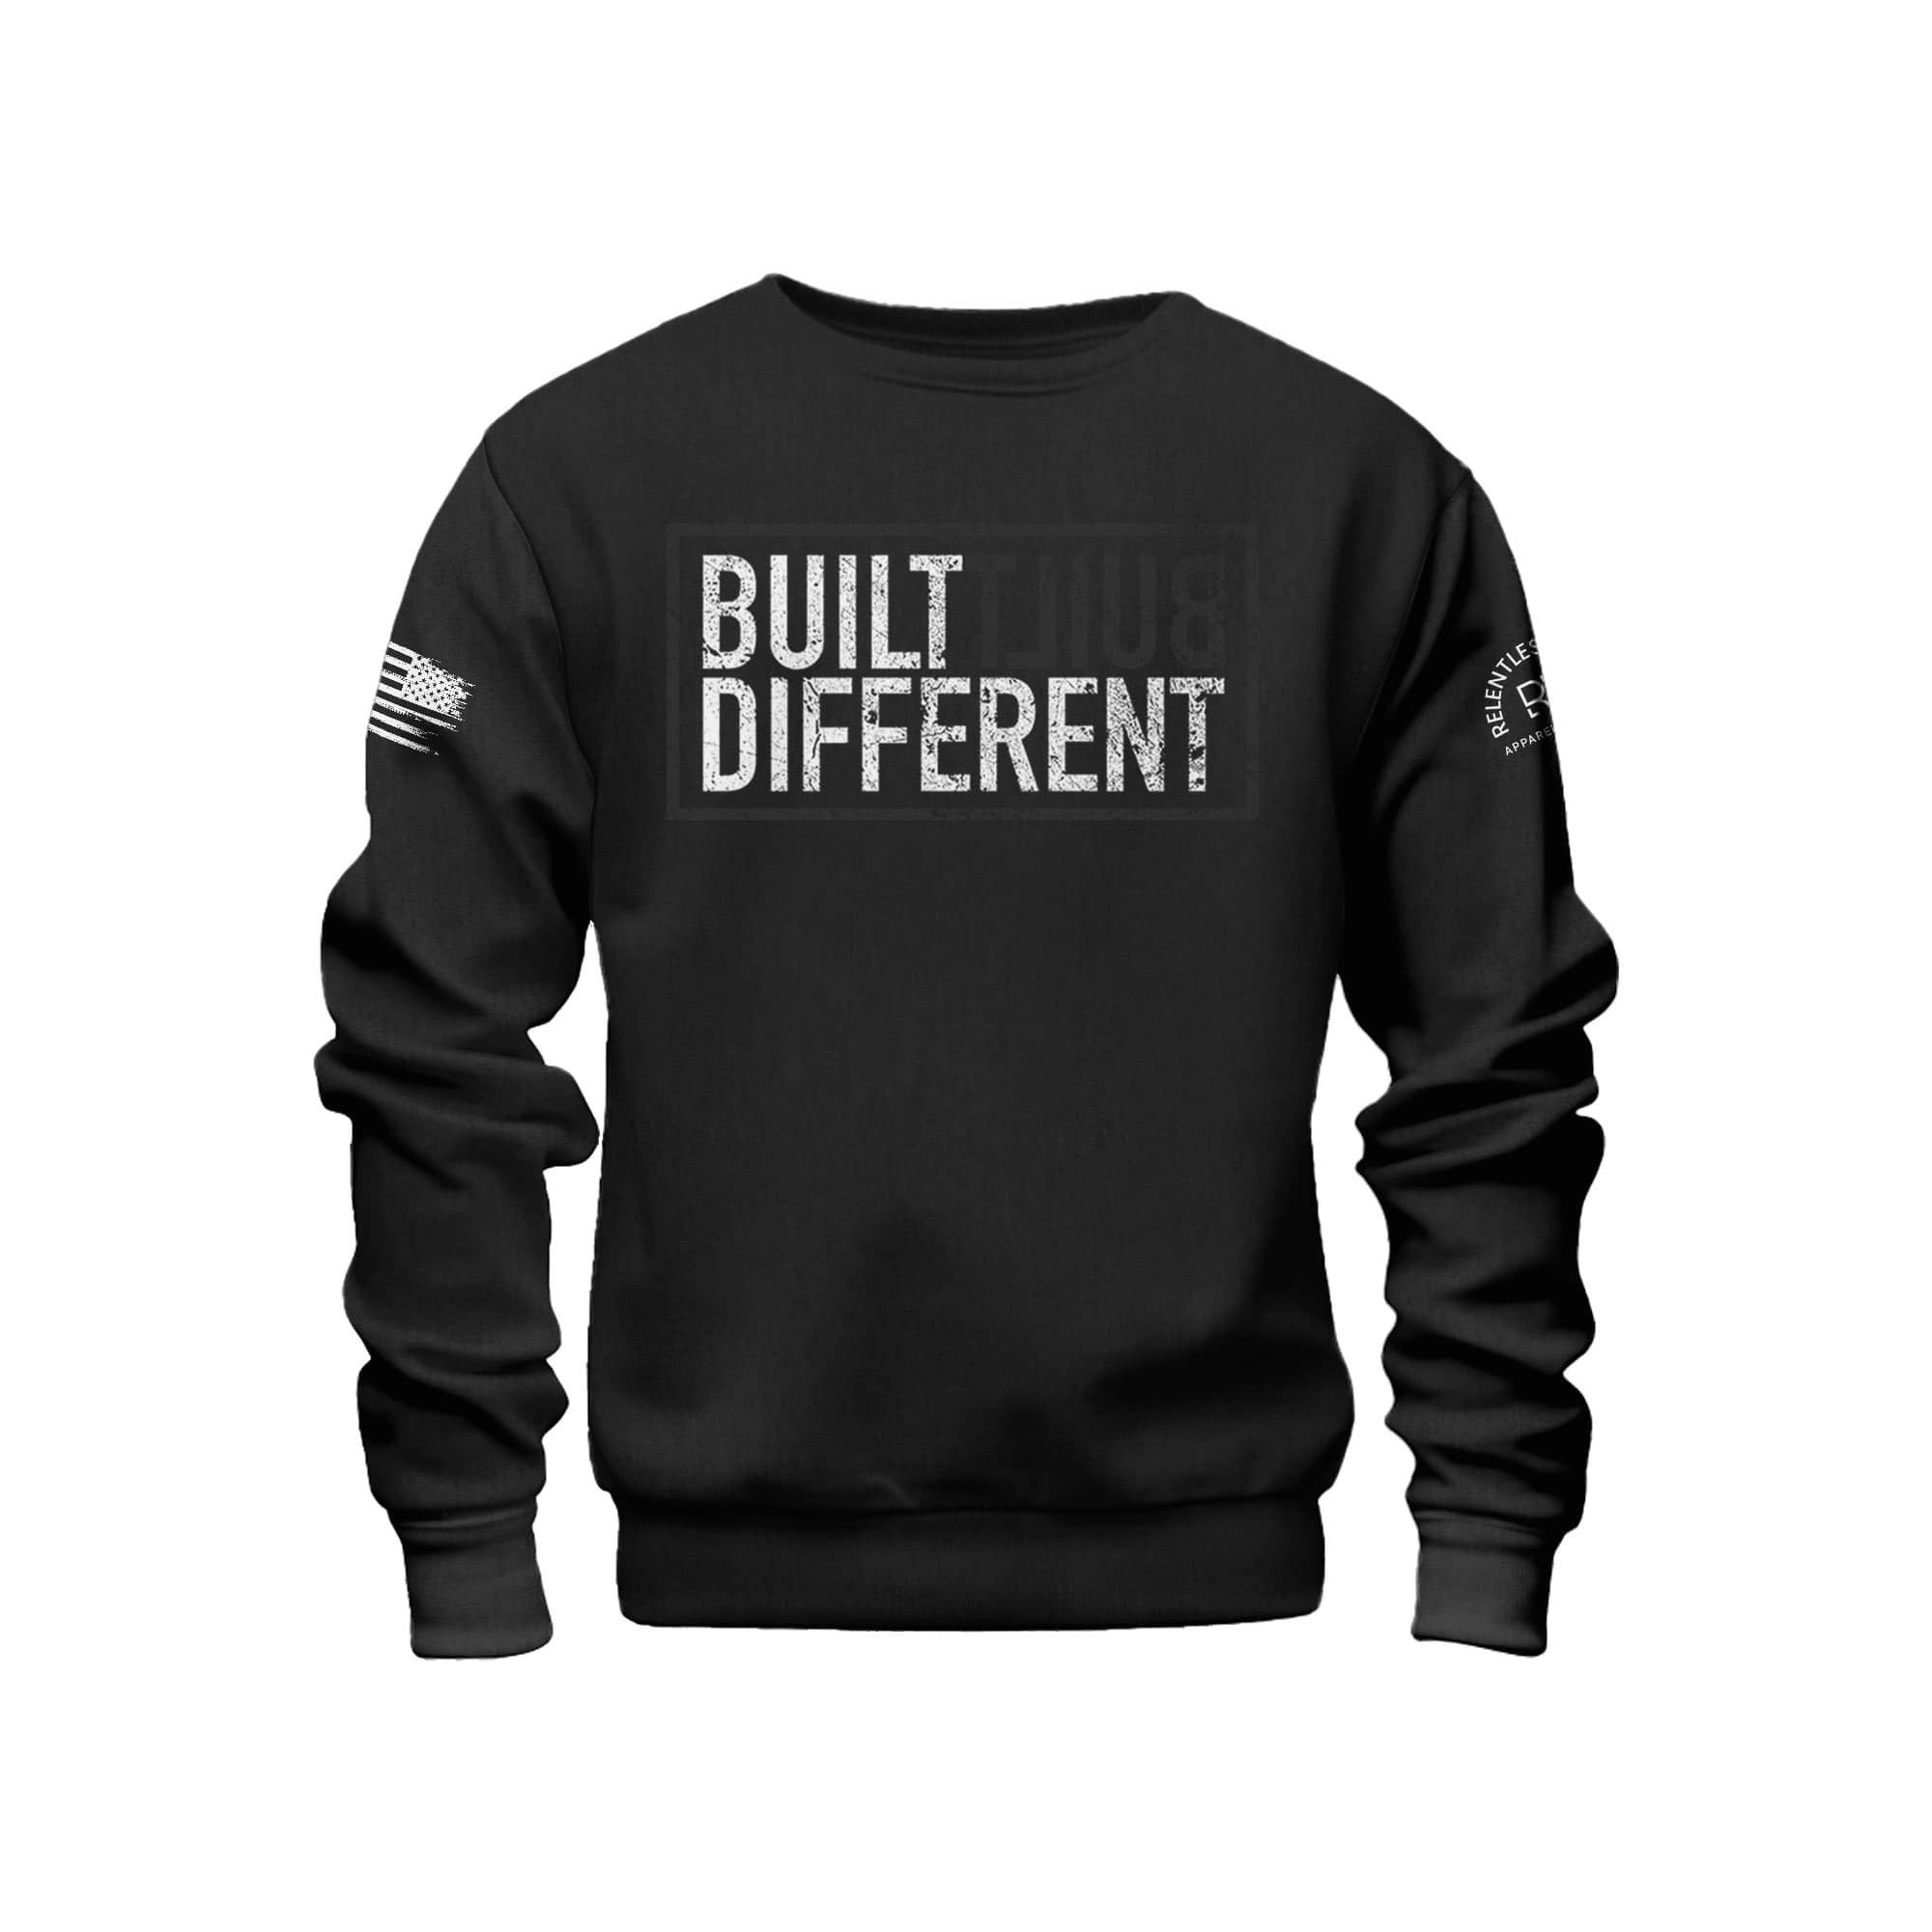 Built different crew neck sweatshirt